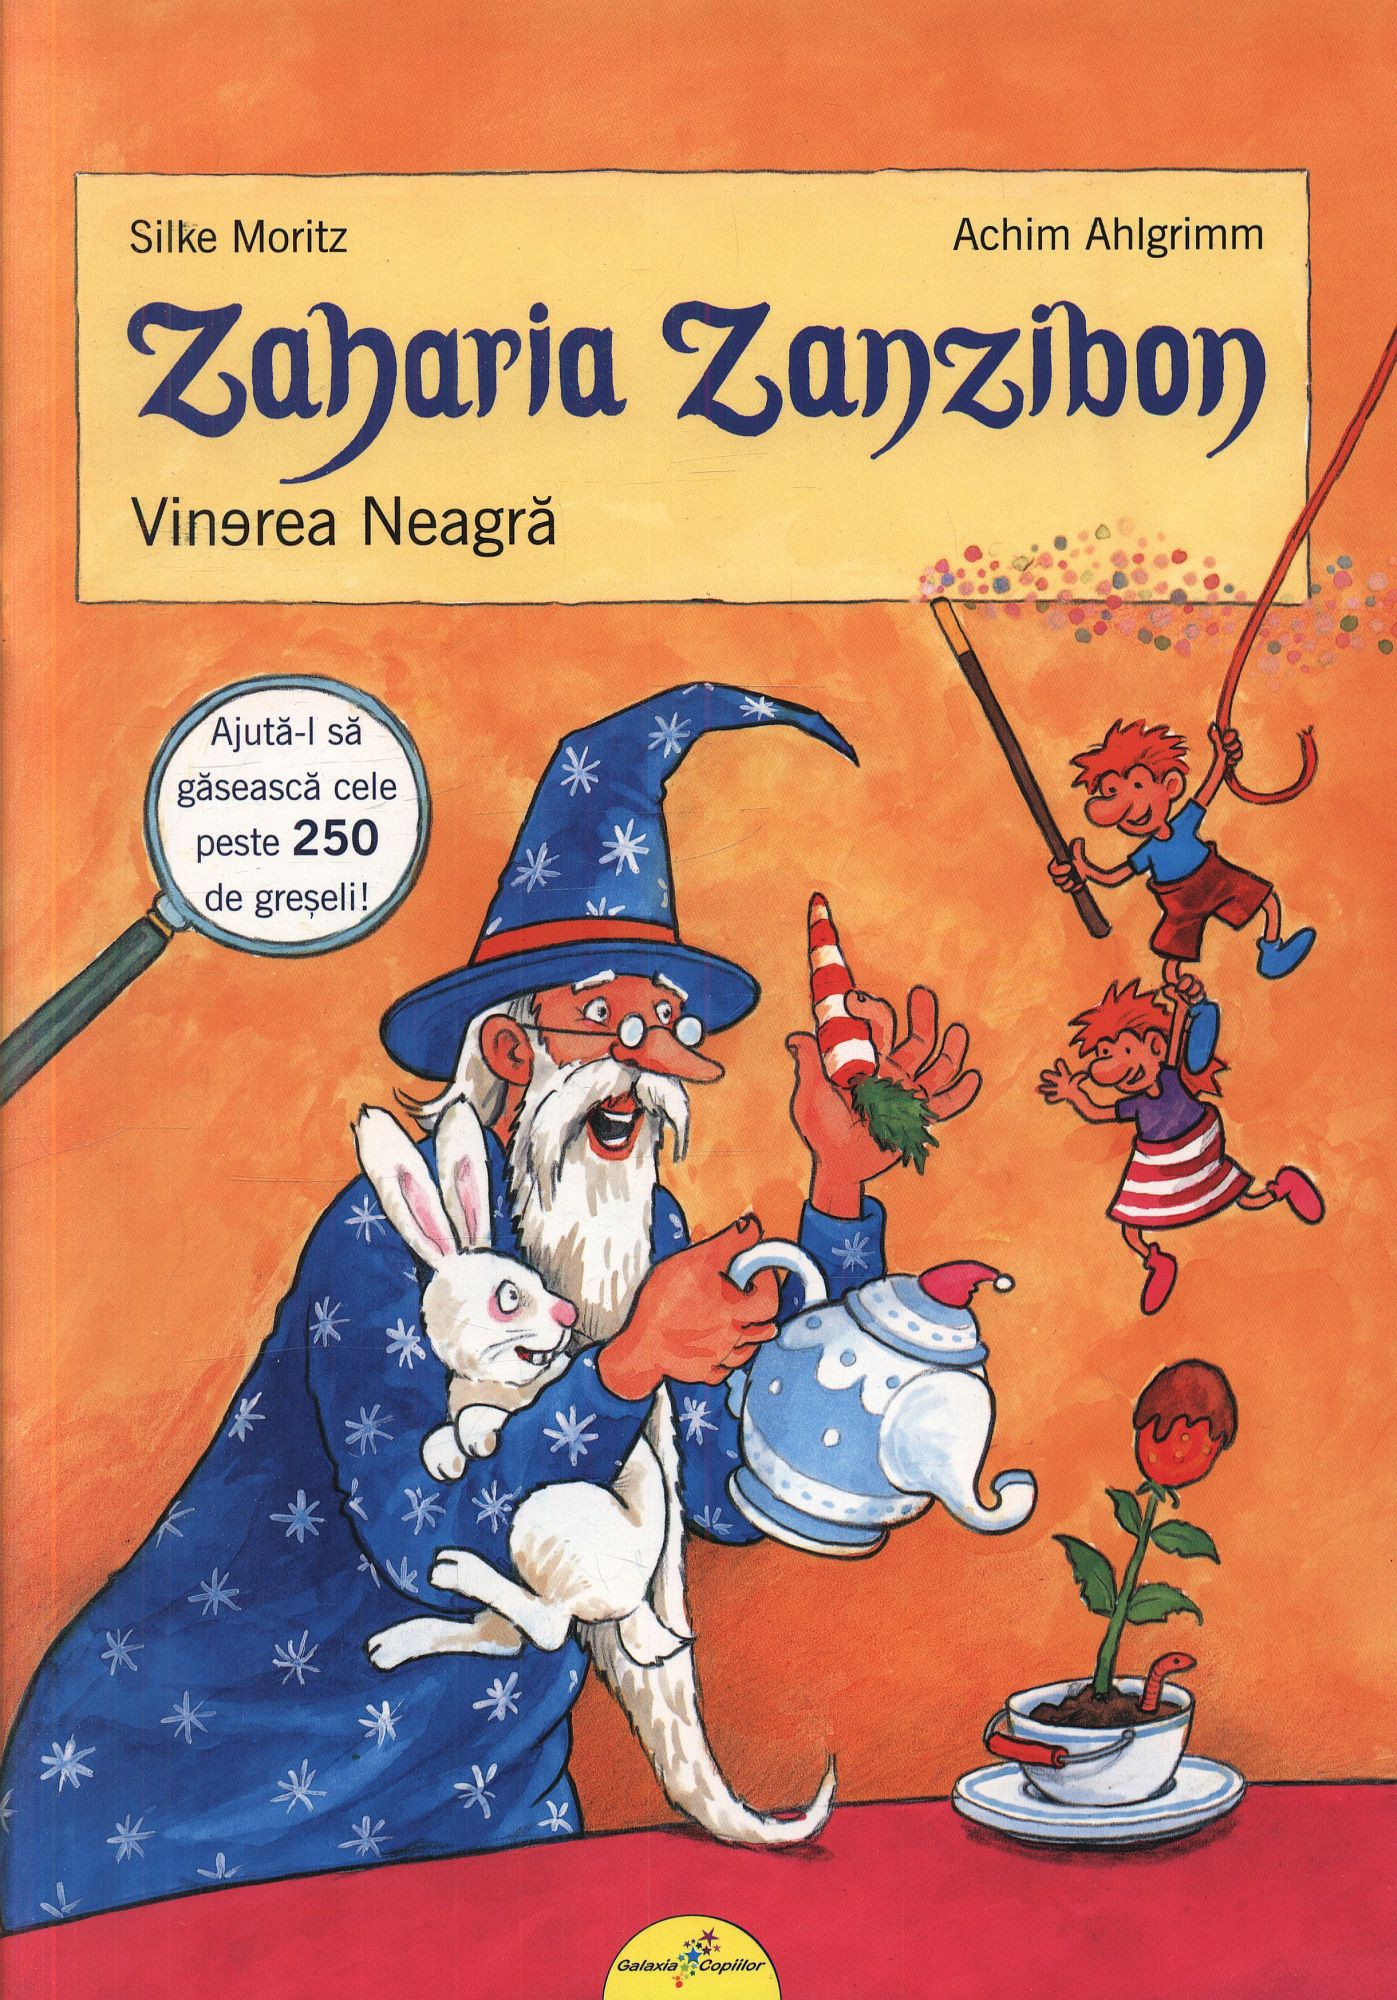 Zaharia Zanzibon vol. 1 - Vinerea Neagra | Silke Moritz